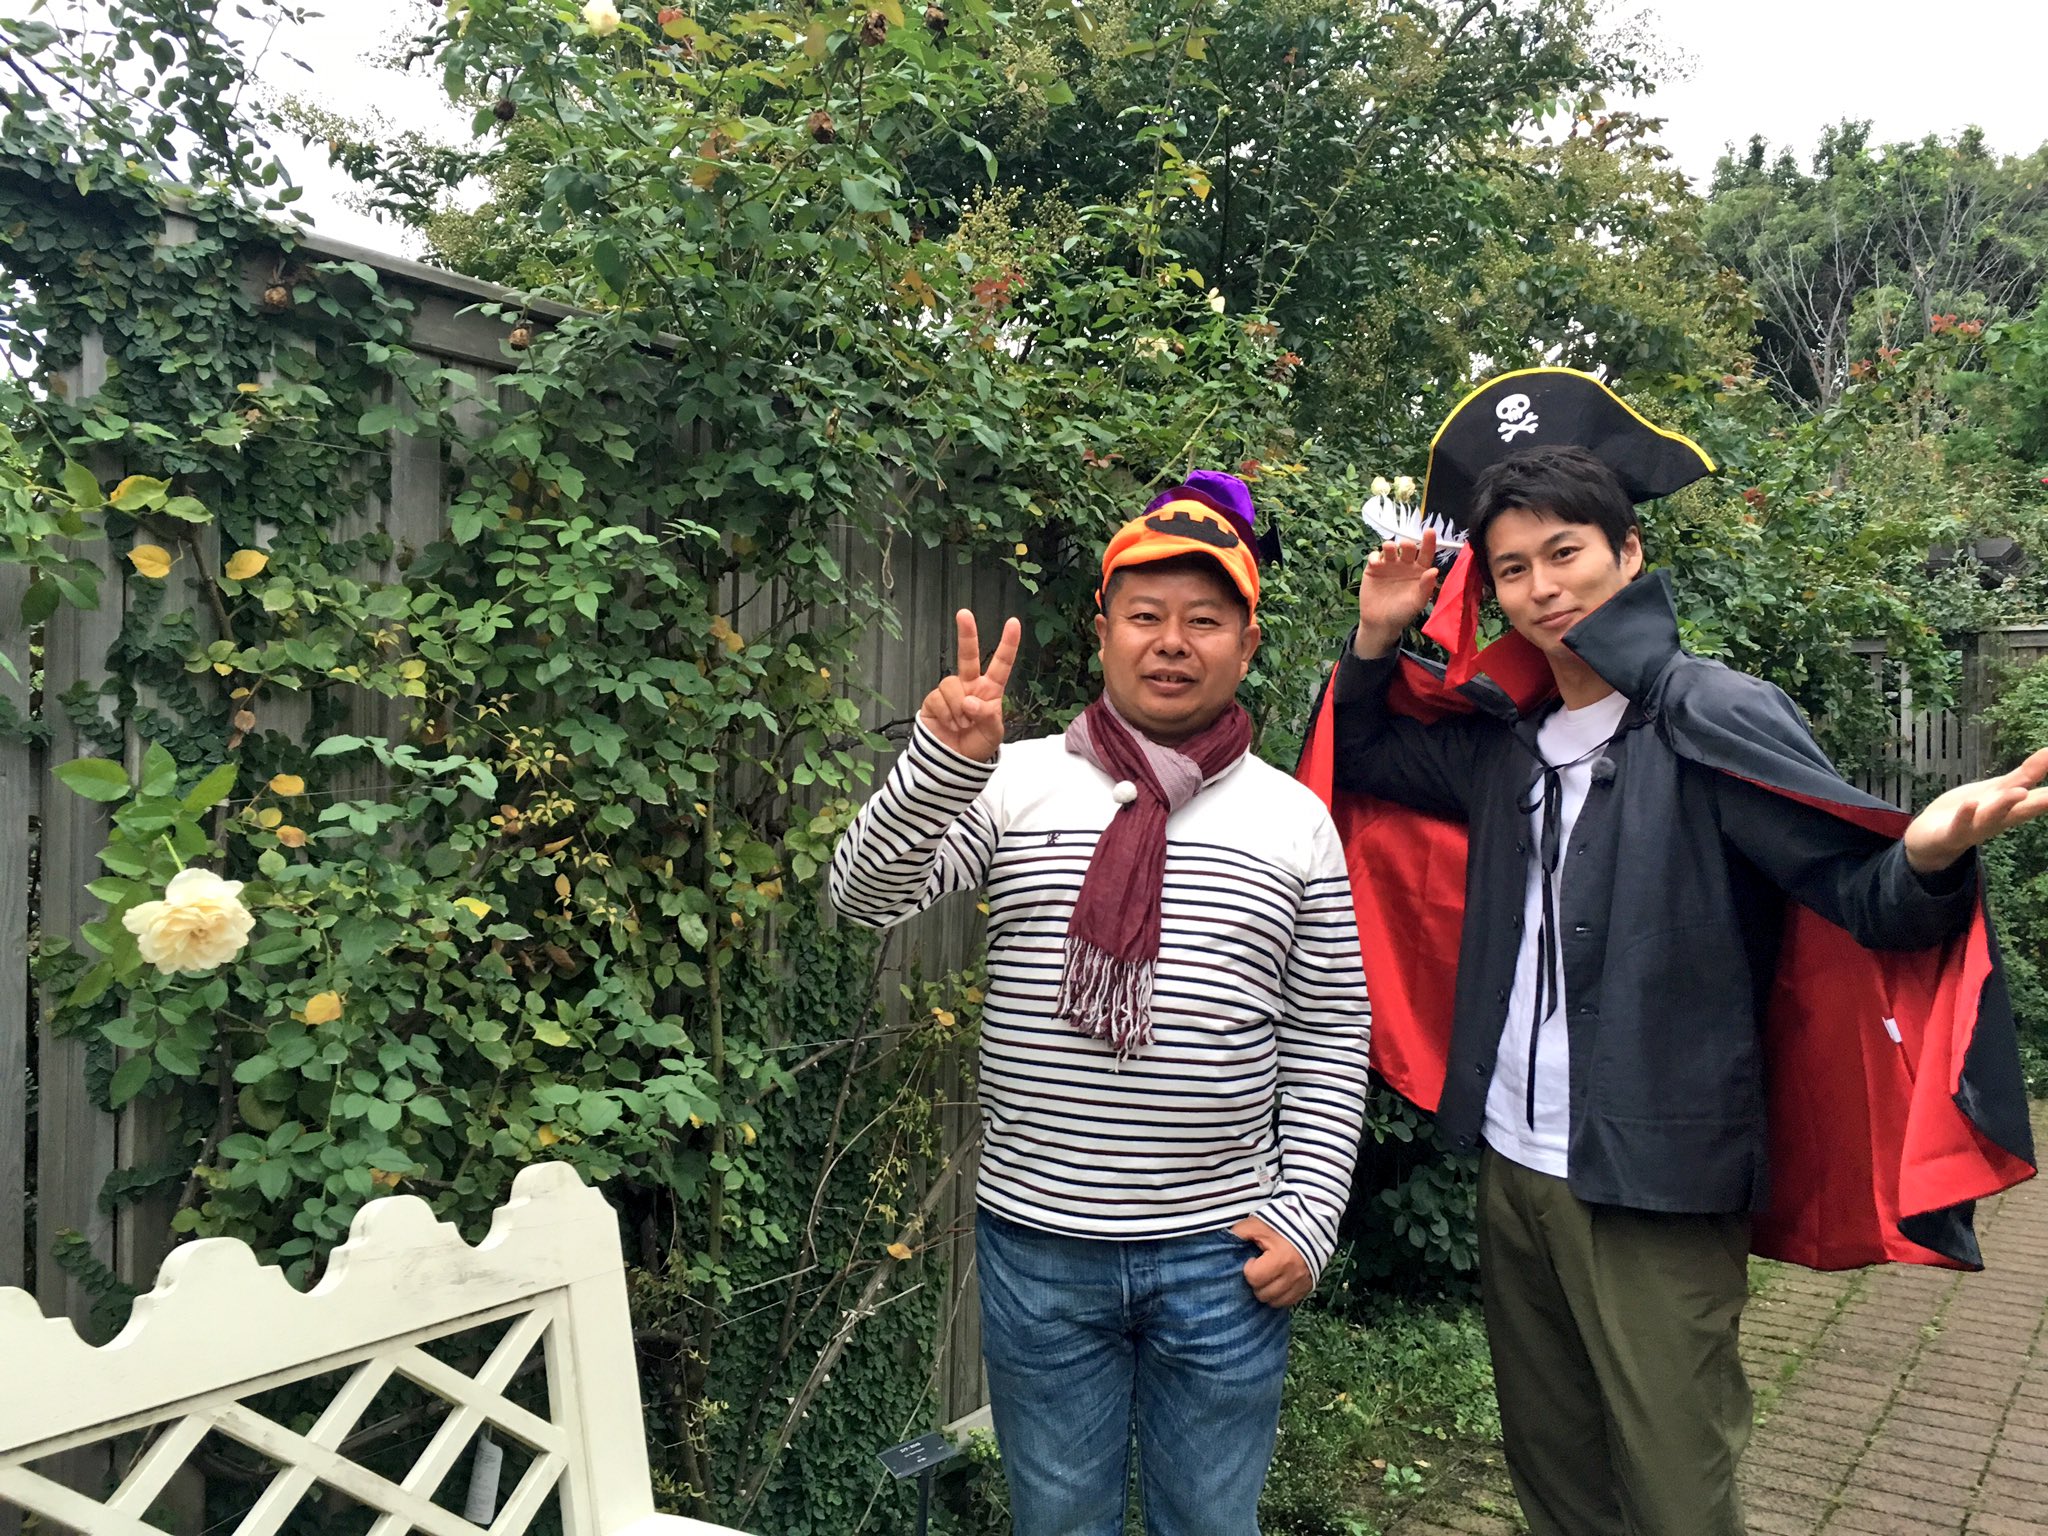 三上真史 秋バラの季節がやってきました 今日の朝8時半からのnhk Eテレ 趣味の園芸 は秋バラ 講師は横浜イングリッシュガーデンの河合伸志さんです 趣味の園芸 Shumien T Co Ktrfpp7rc9 Twitter